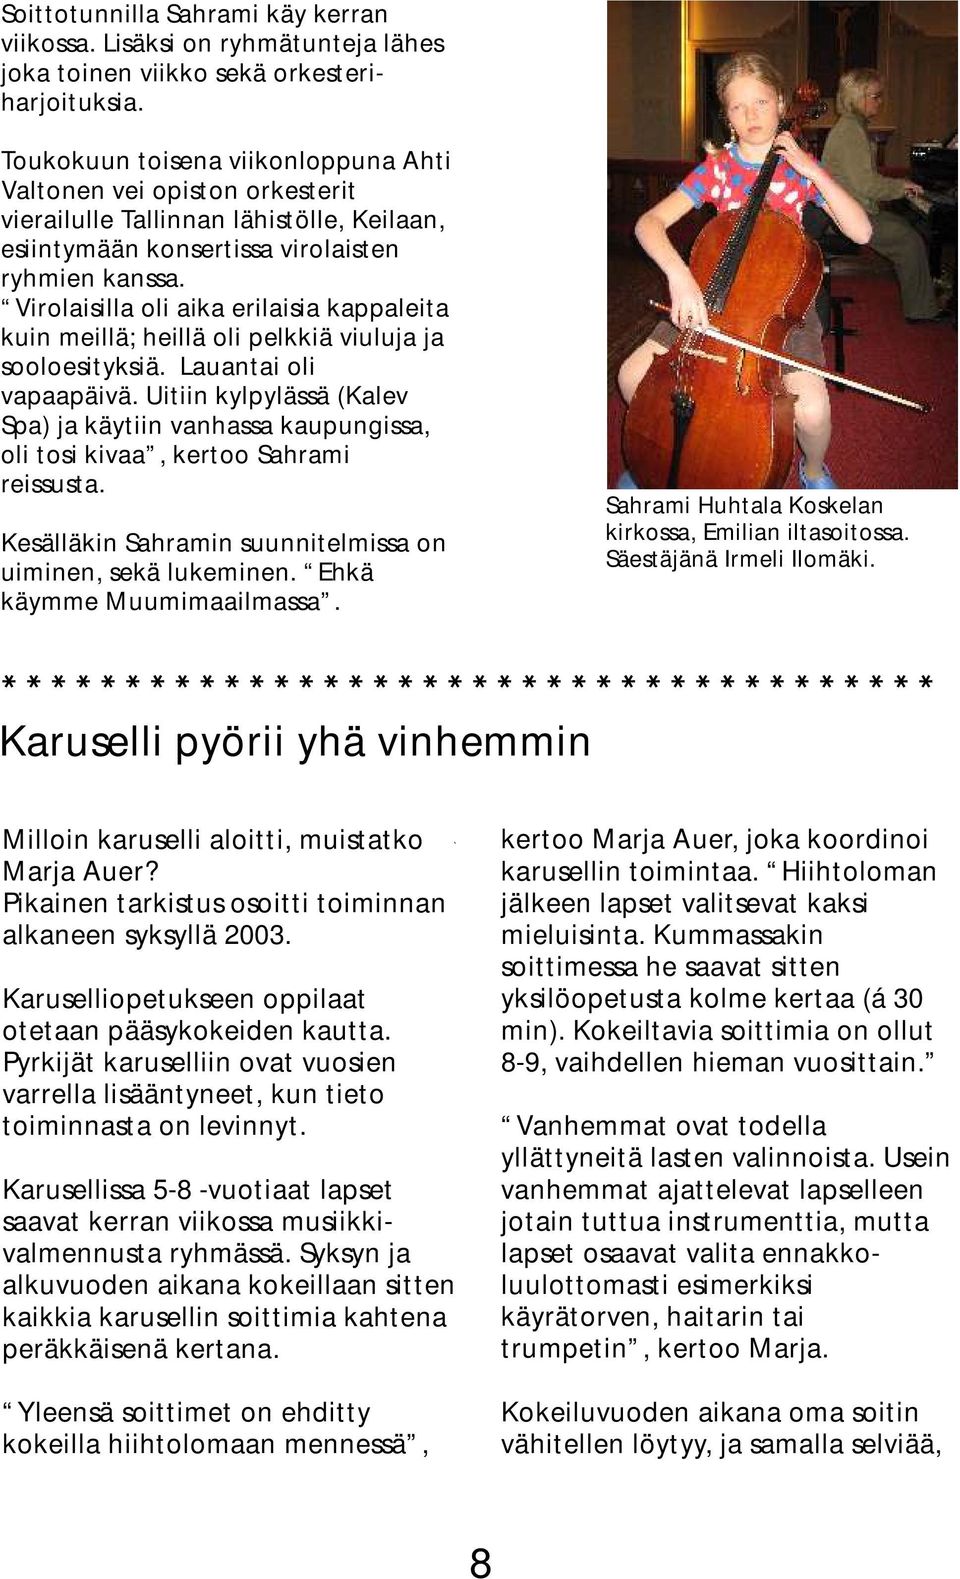 Virolaisilla oli aika erilaisia kappaleita kuin meillä; heillä oli pelkkiä viuluja ja sooloesityksiä. Lauantai oli vapaapäivä.